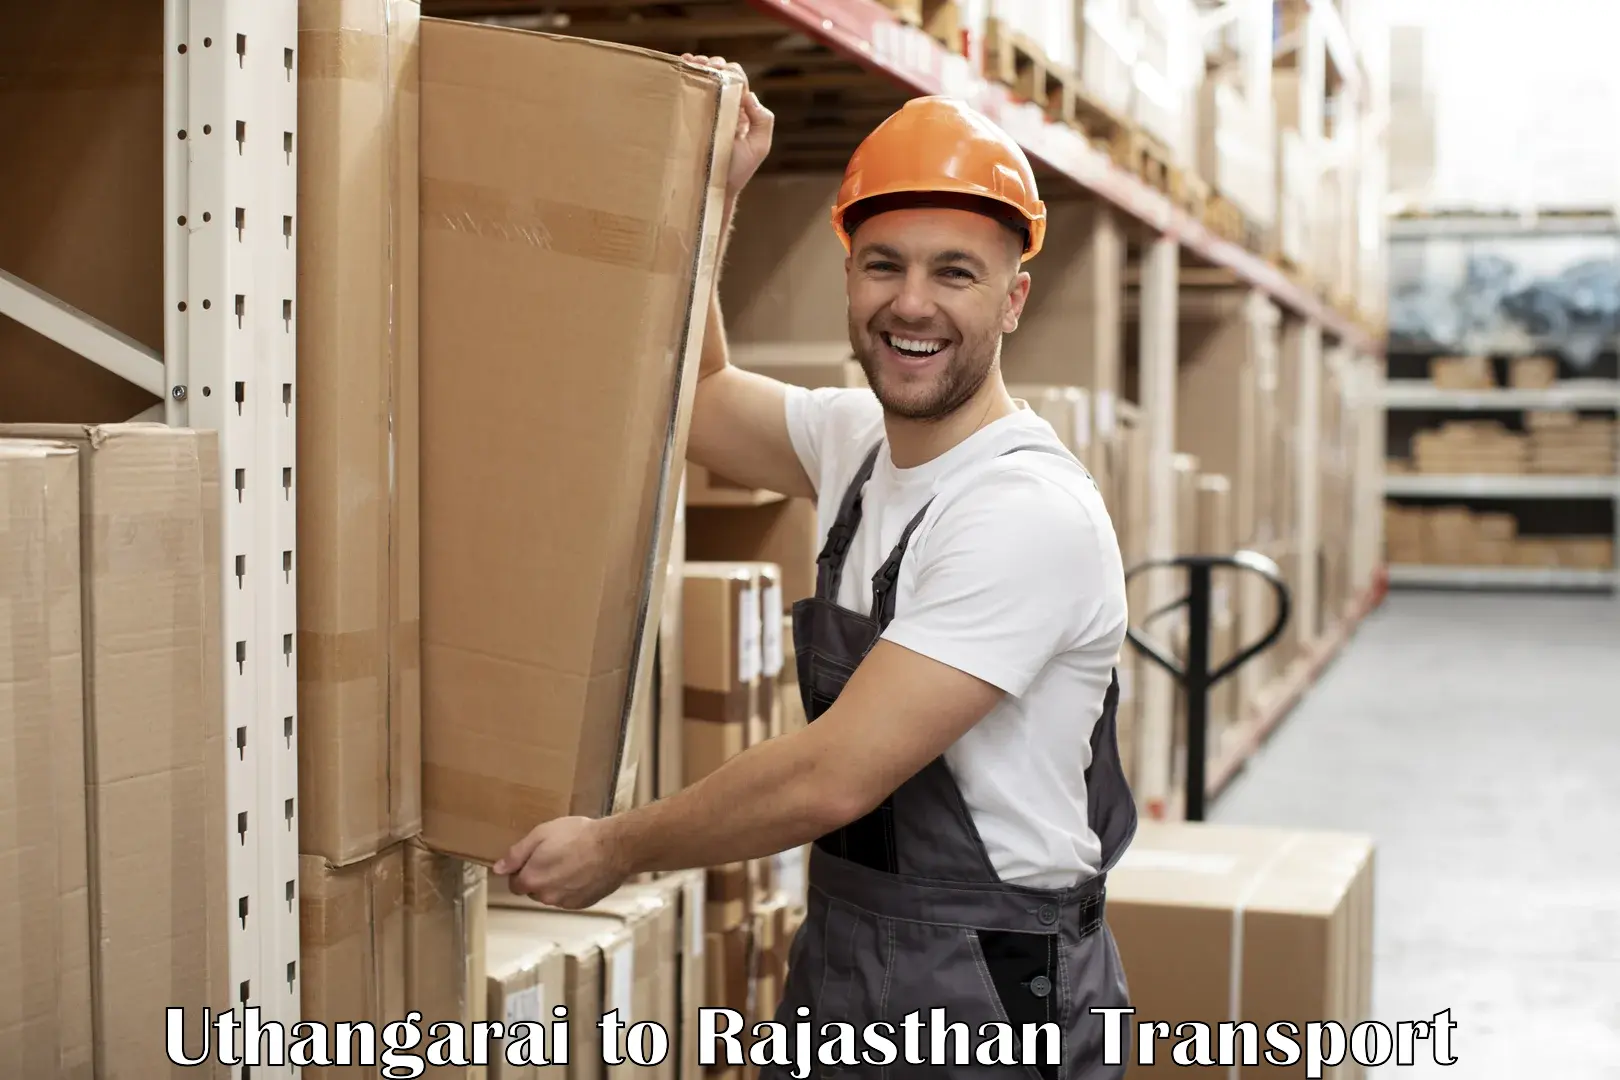 Cargo transport services Uthangarai to Rajasthan